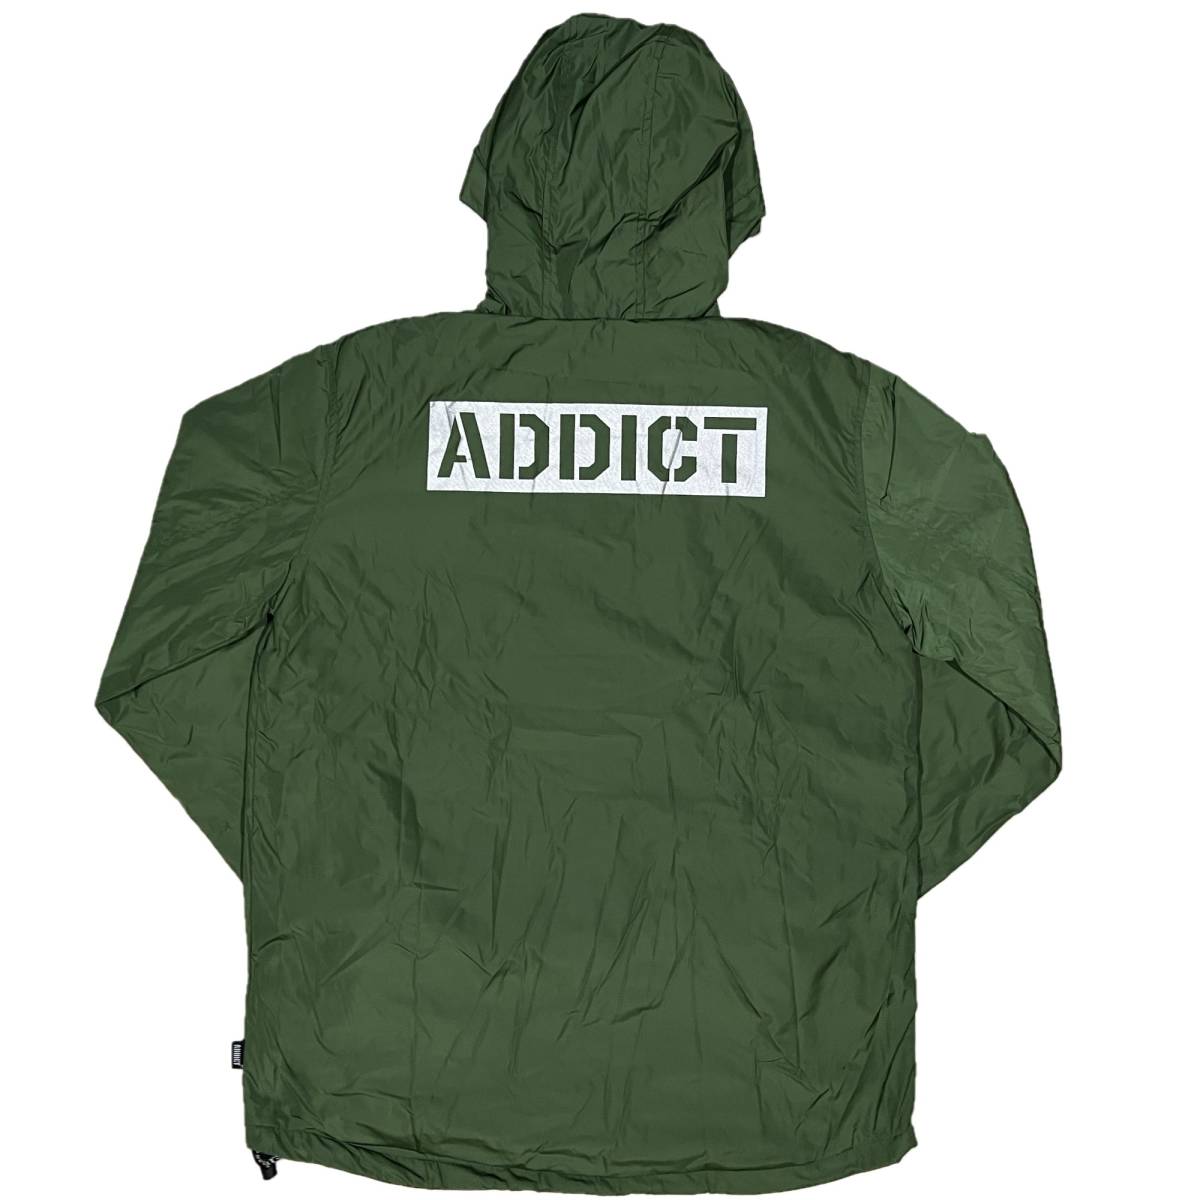 並行輸入品] ADDICT アディクト ブランドロゴ デザイン ジャケット